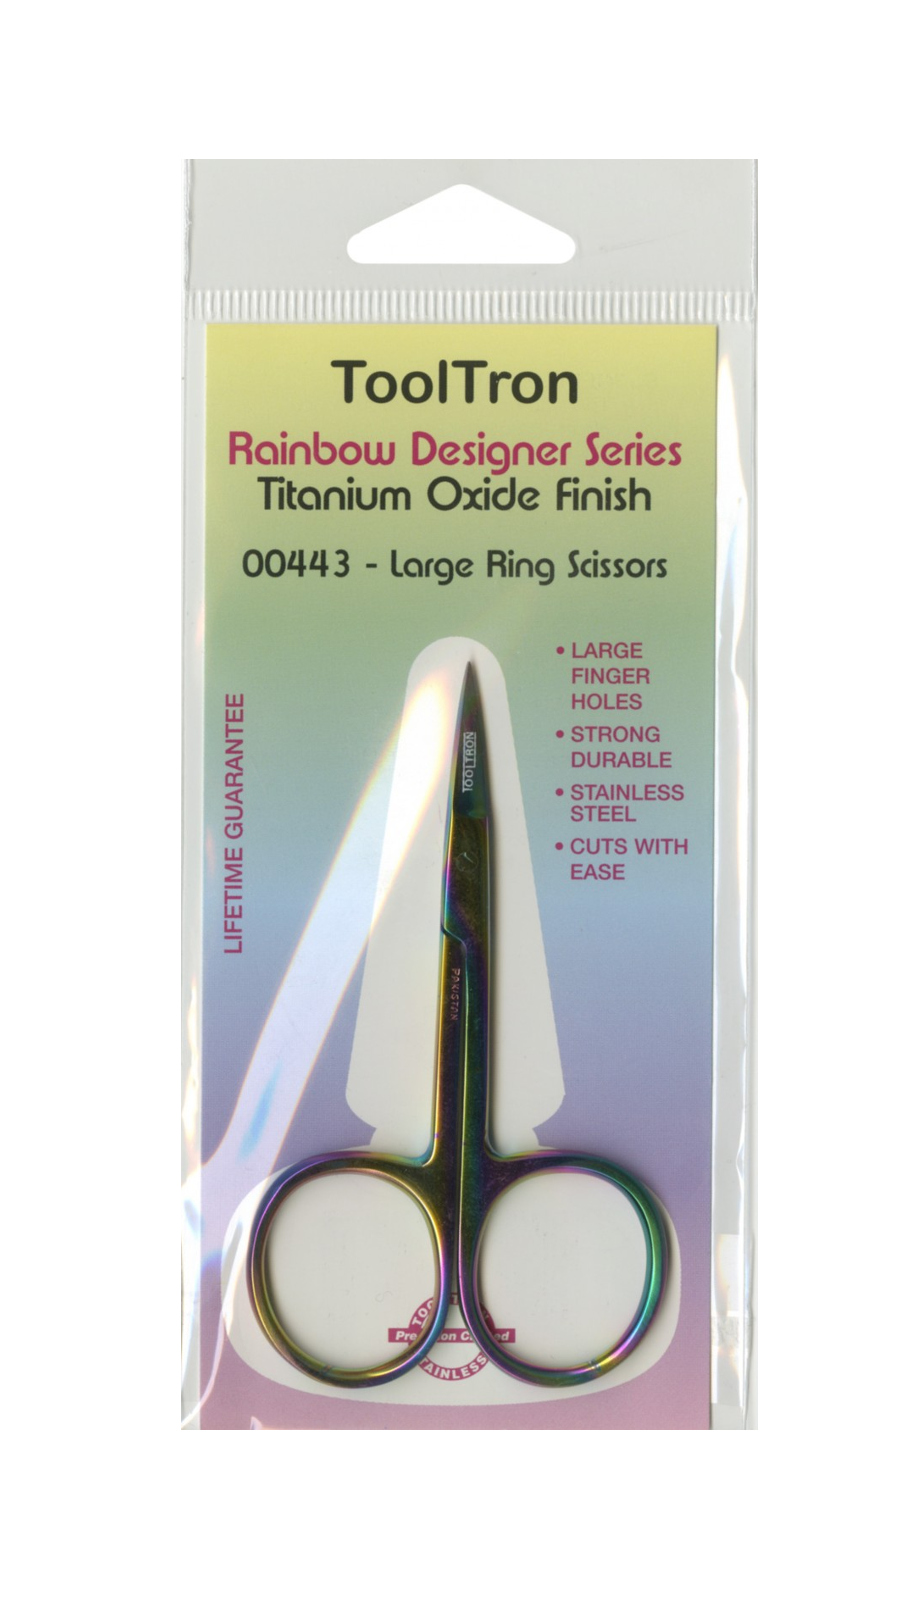 Tooltron Large Ring Scissors Rainbow Titanium Oxide Finish